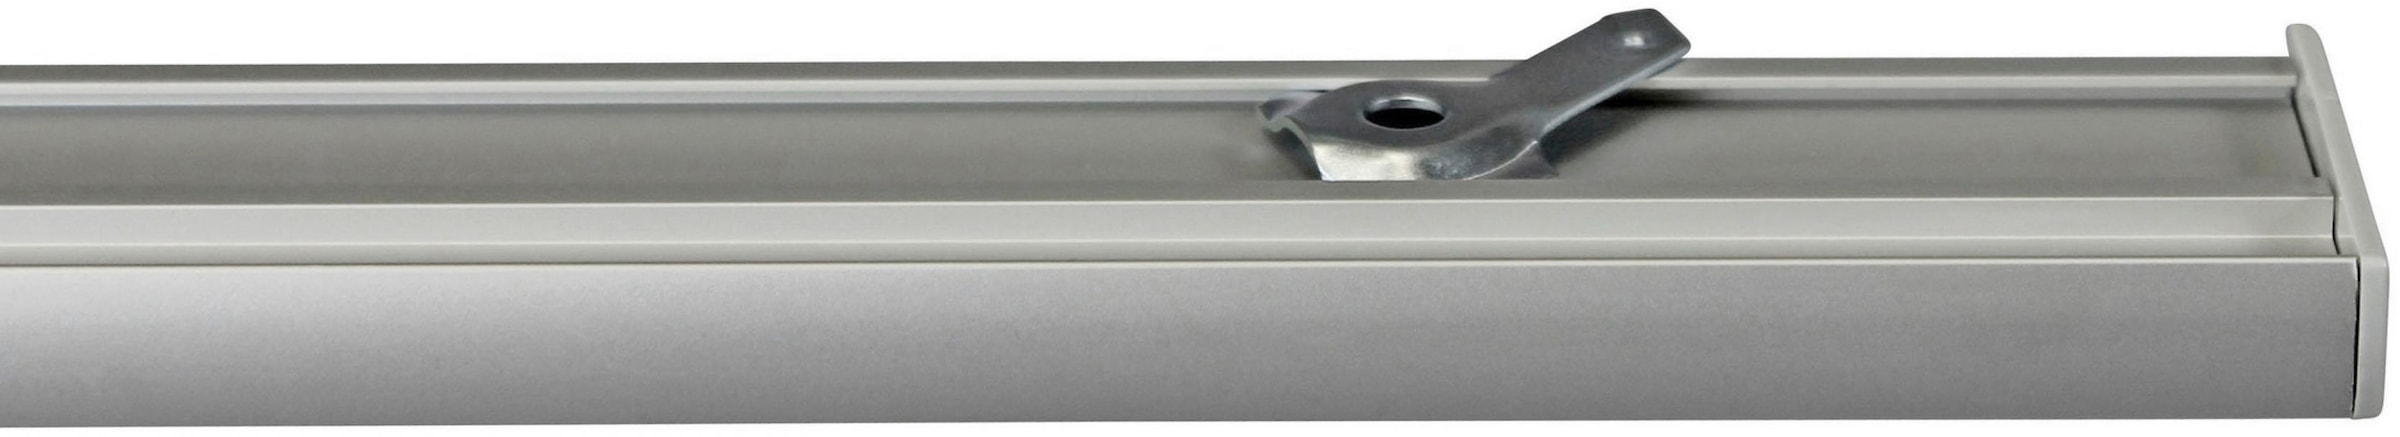 GARESA Gardinenschiene »Flächenvorhangschiene Compact«, 3 läufig-läufig, Wunschmaßlänge, Aluminiumschiene für Vorhänge mit Gleiter, verlängerbar, Decke